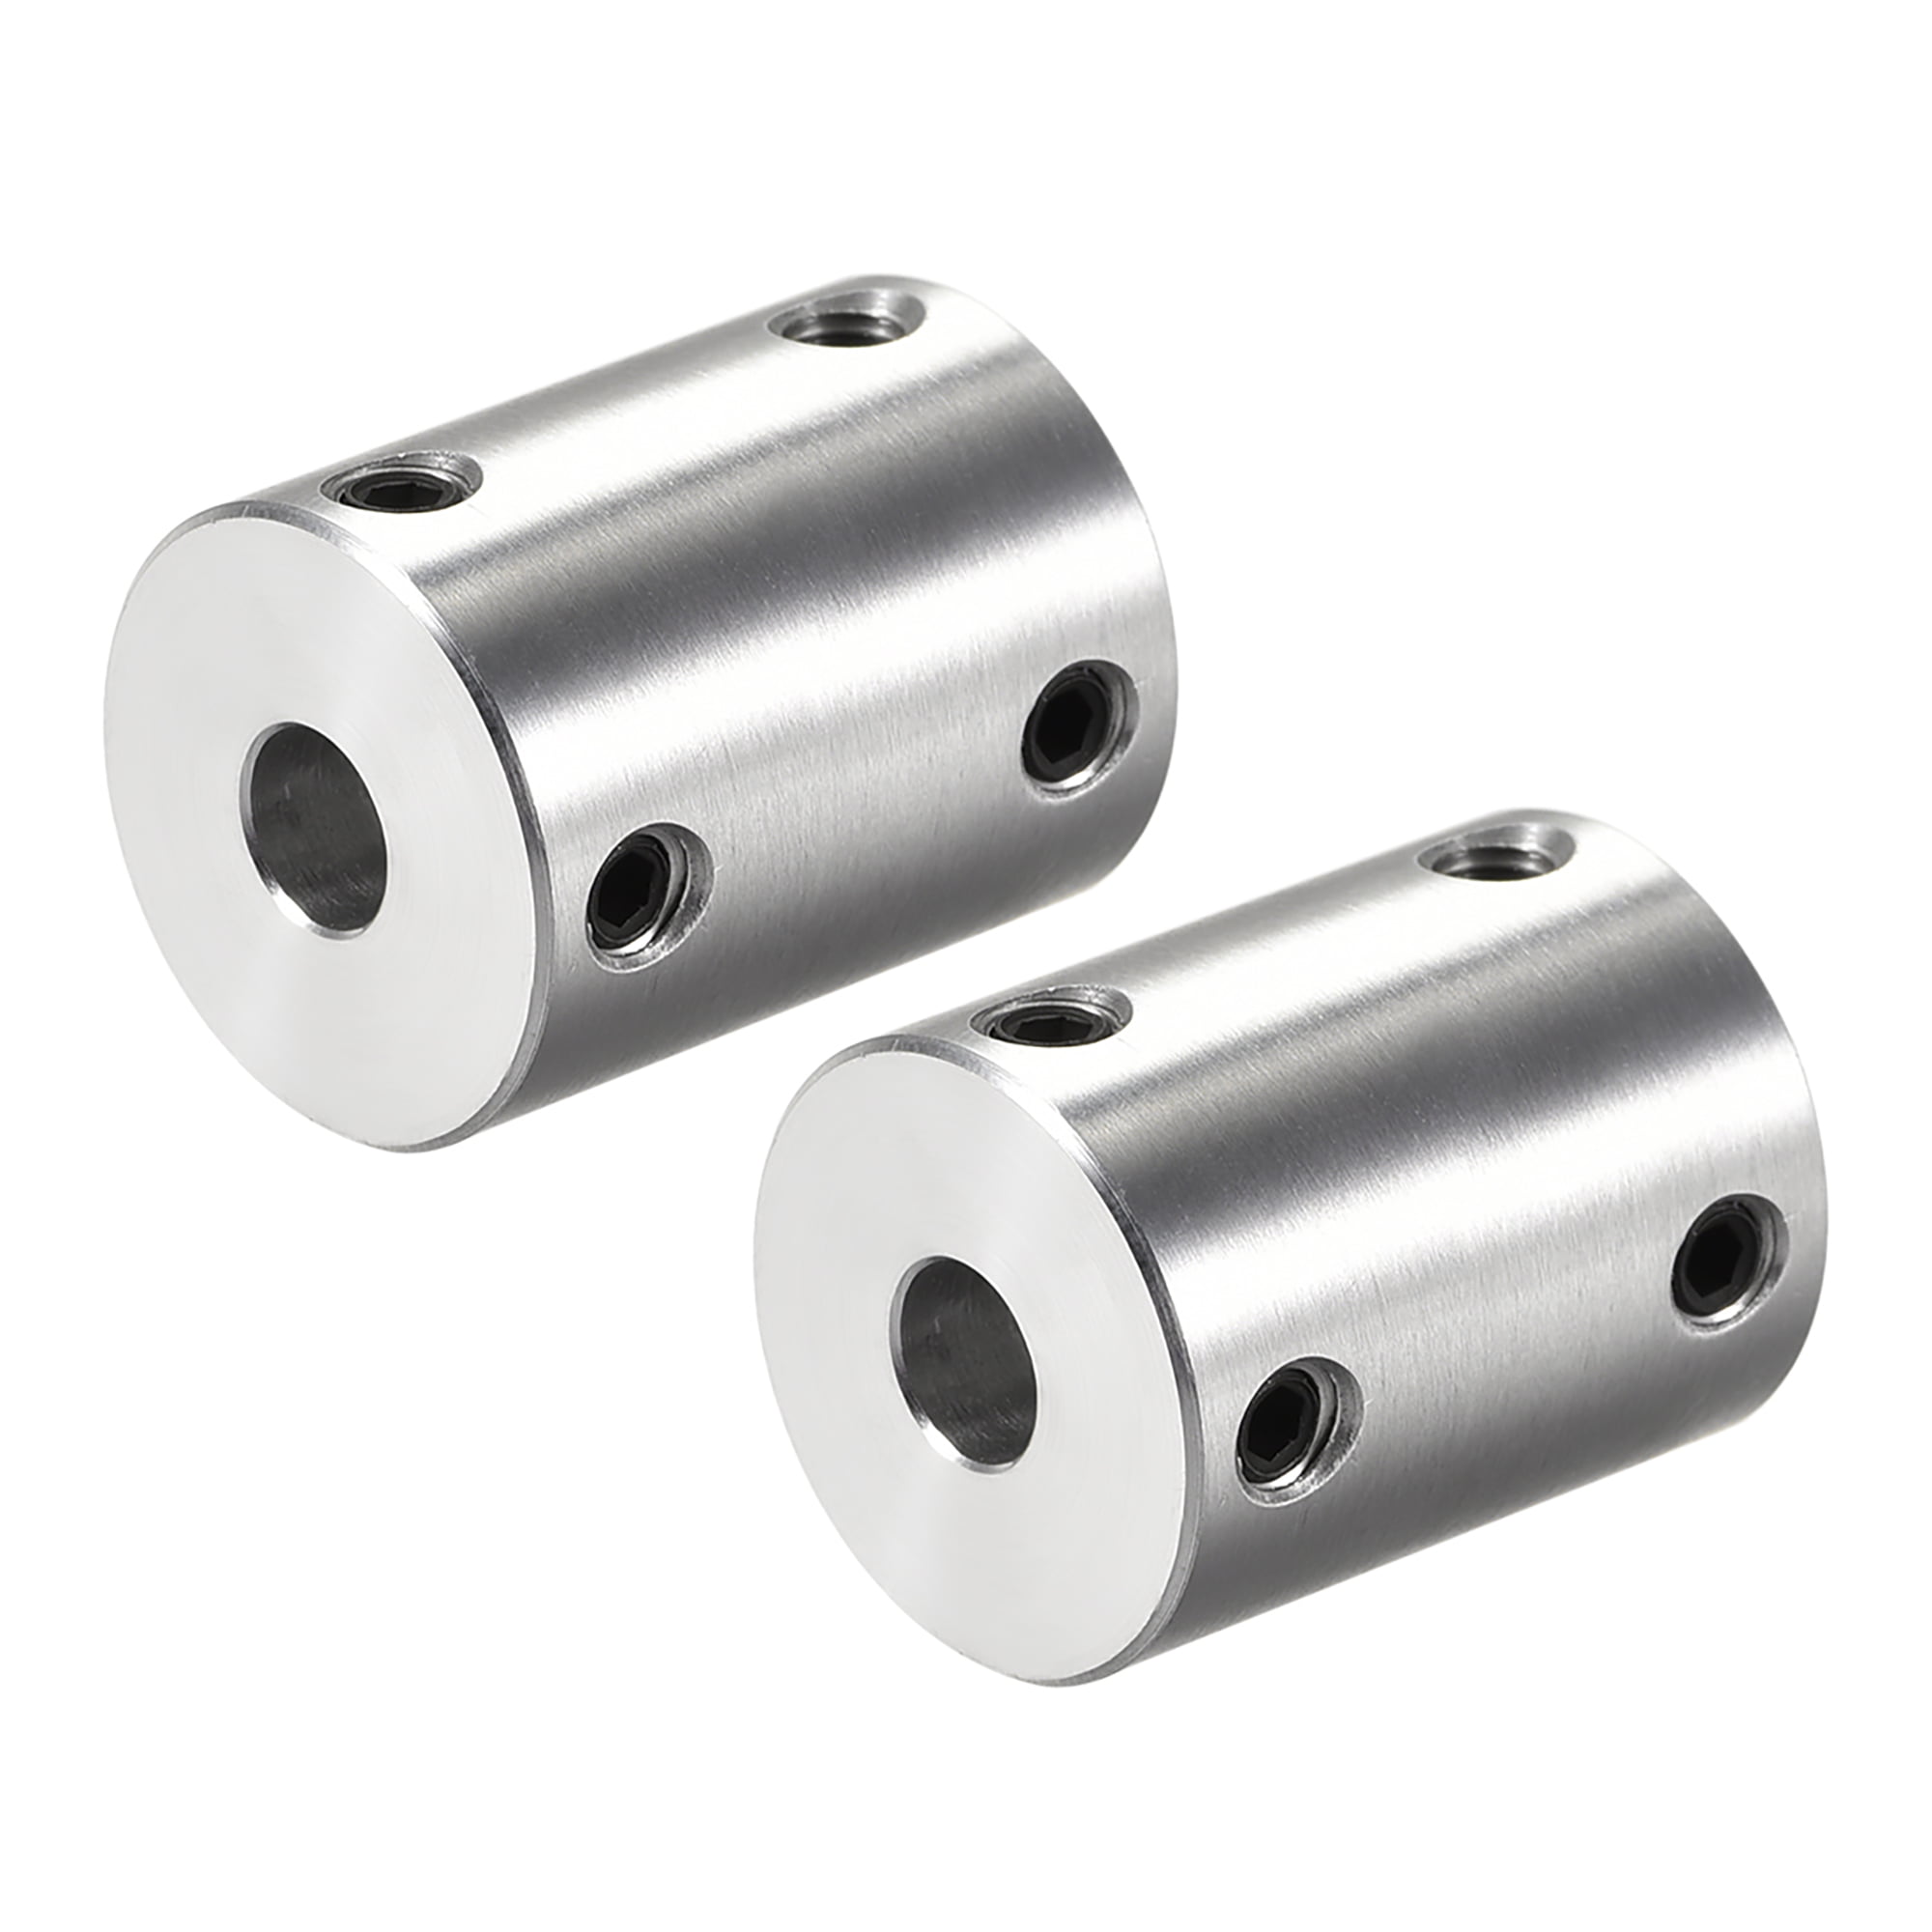 Details about   2 x Silver Steel Rigid Flange Coupling Shaft Coupler Connectors Set 